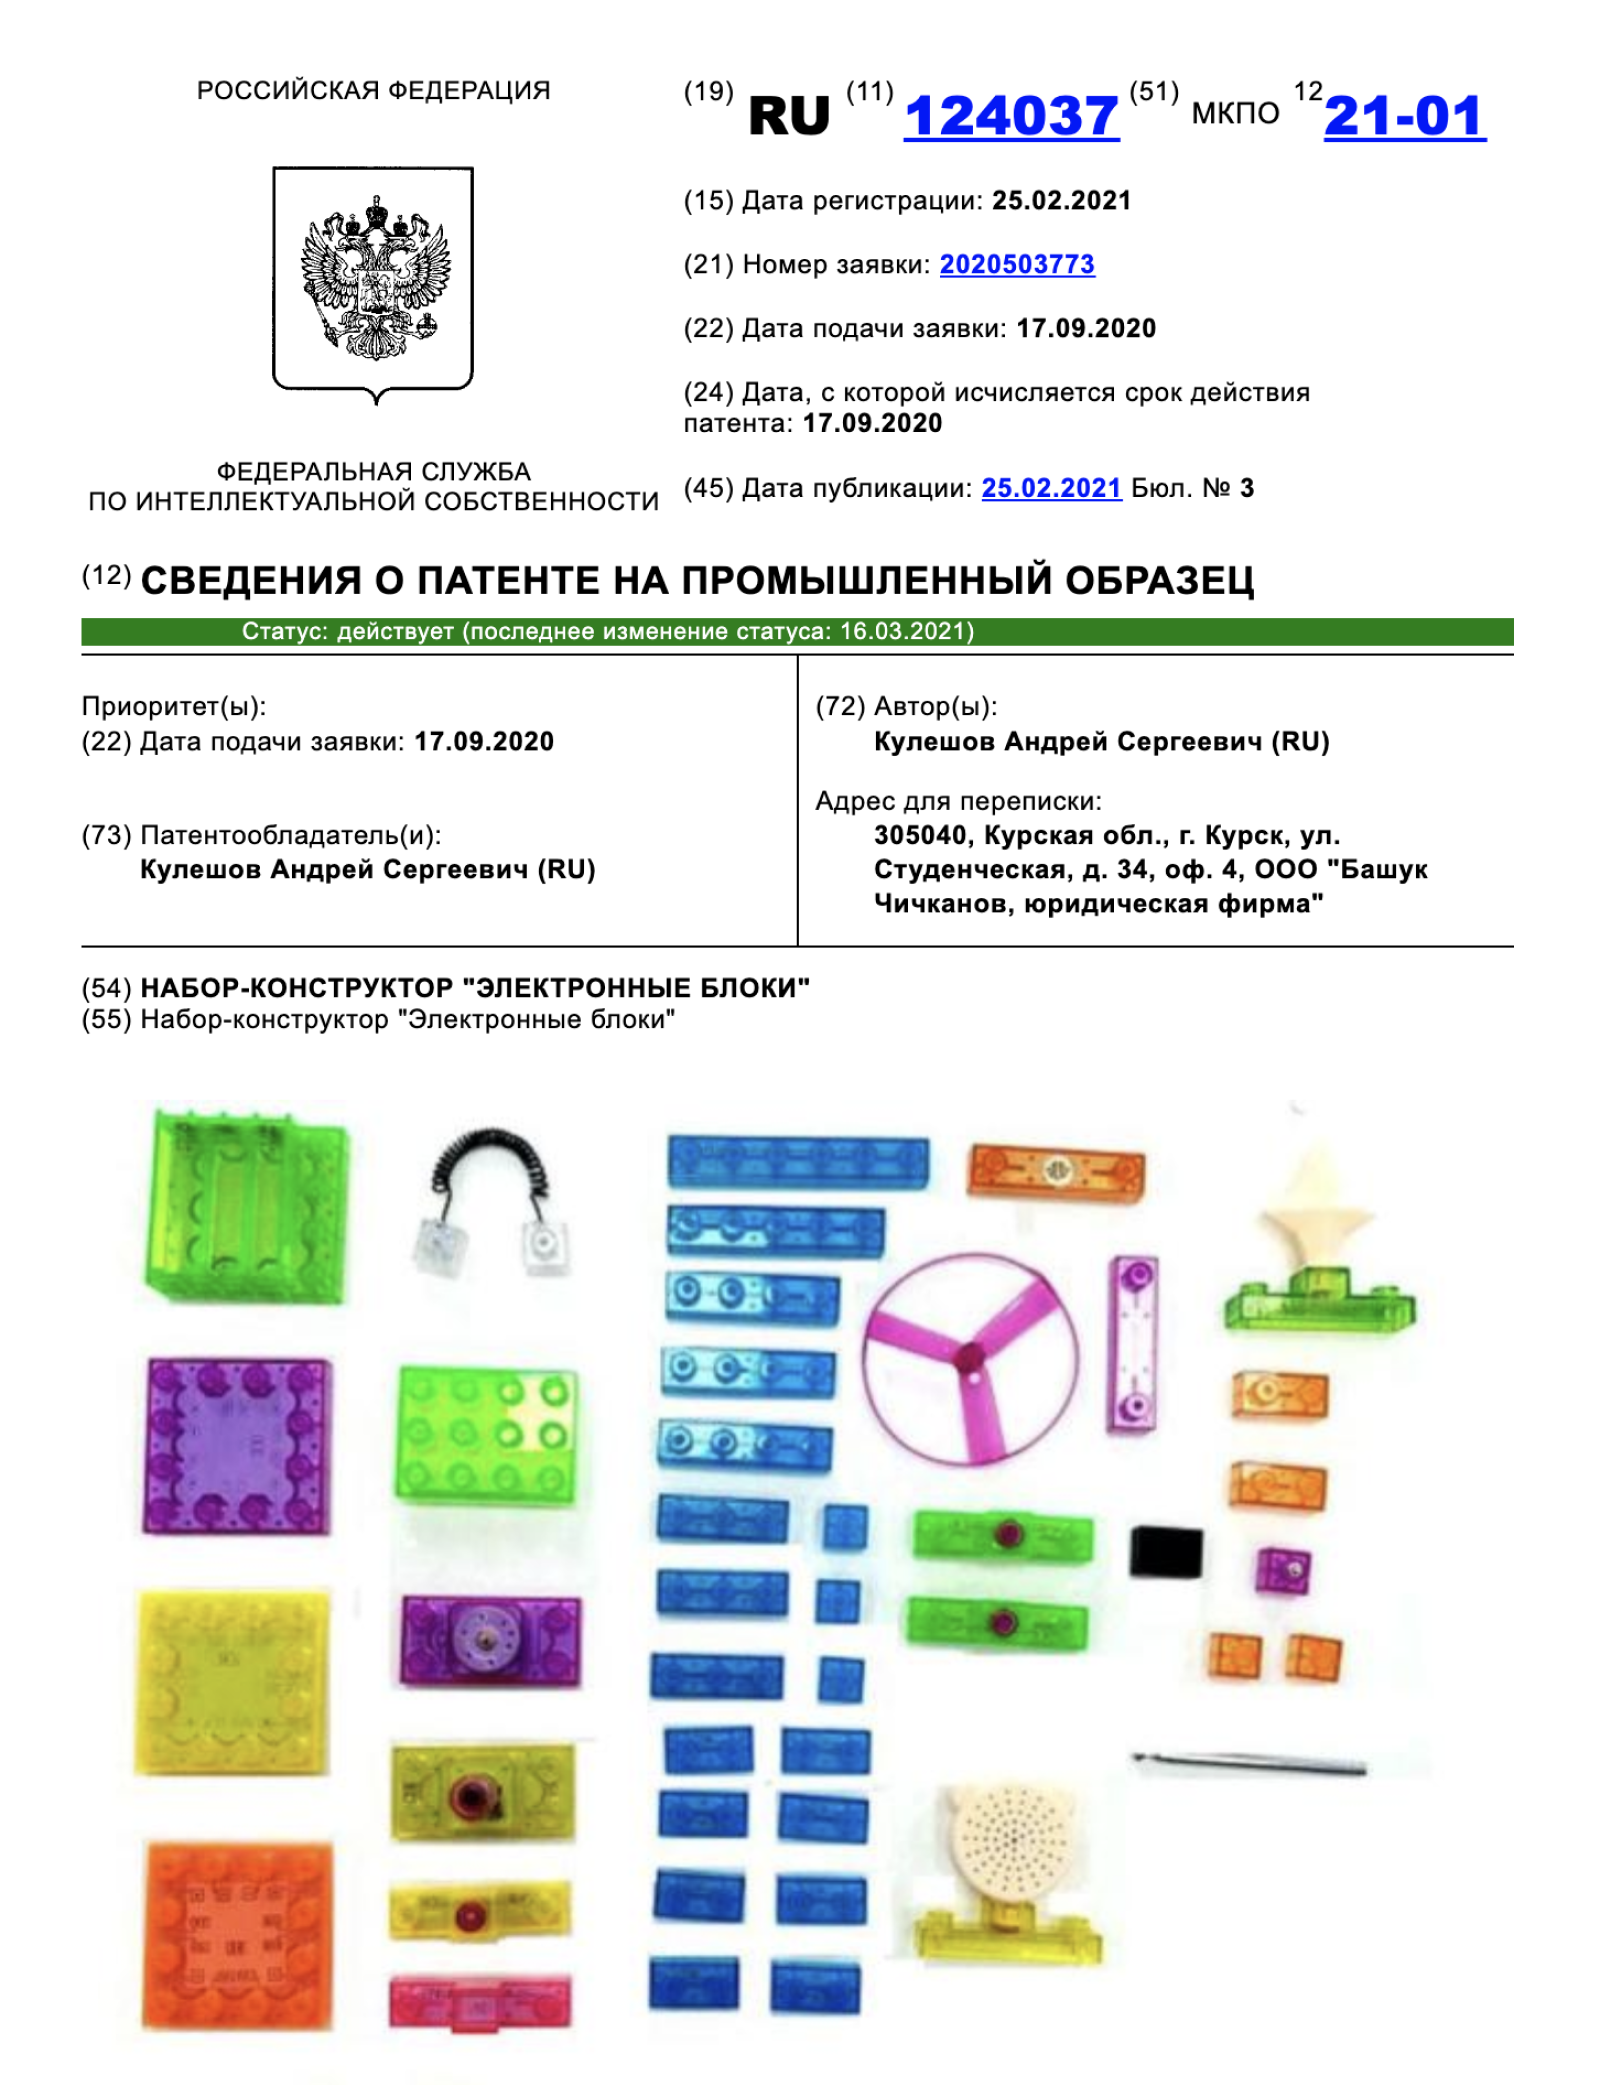 Пример патента на промышленный образец из моей практики — патент на конструктор. Источник: new.fips.ru